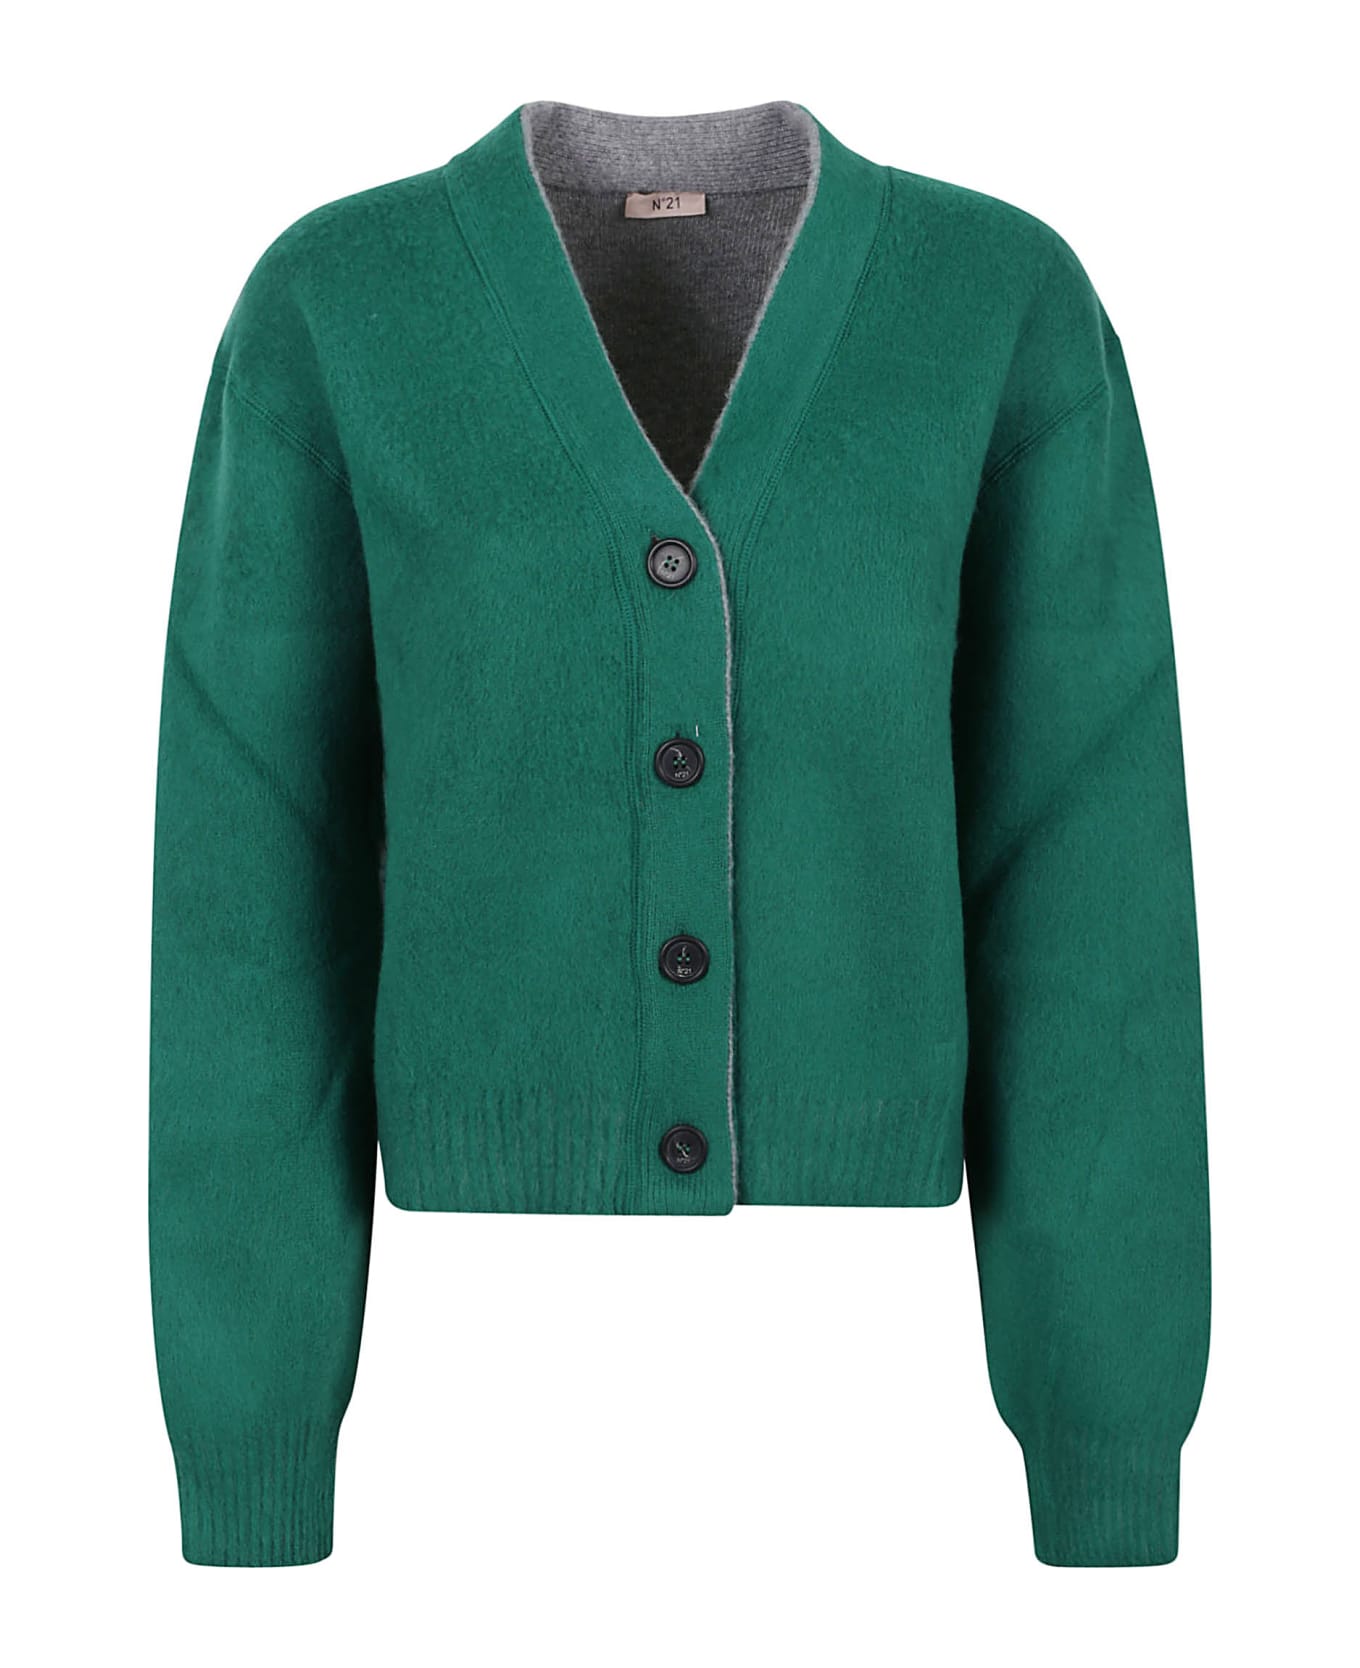 N.21 N°21 Sweaters Green - Green カーディガン